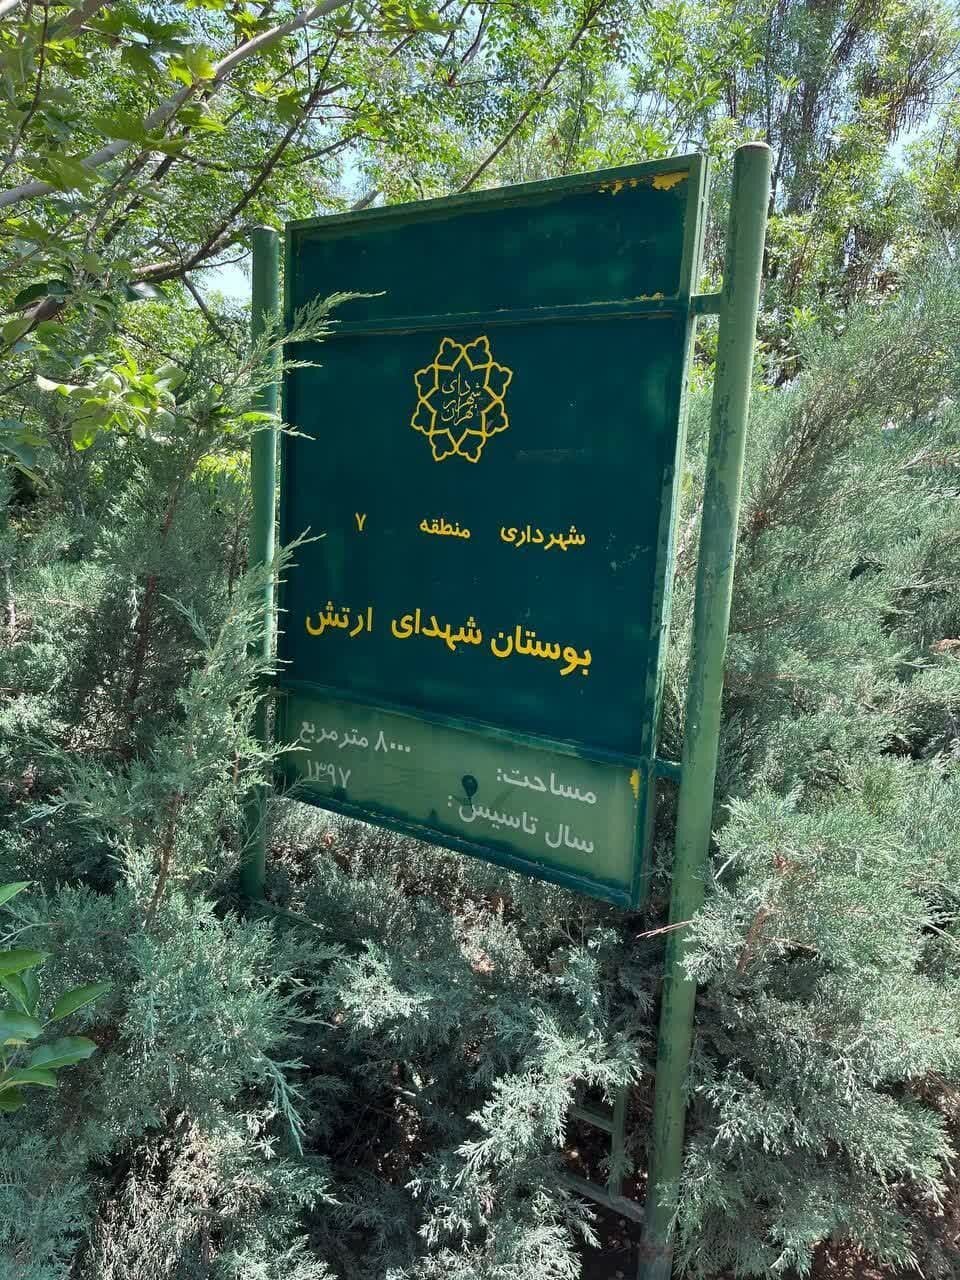 حصارکشی شهرداری تهران به یک پارک دیگر رسید/ عکس